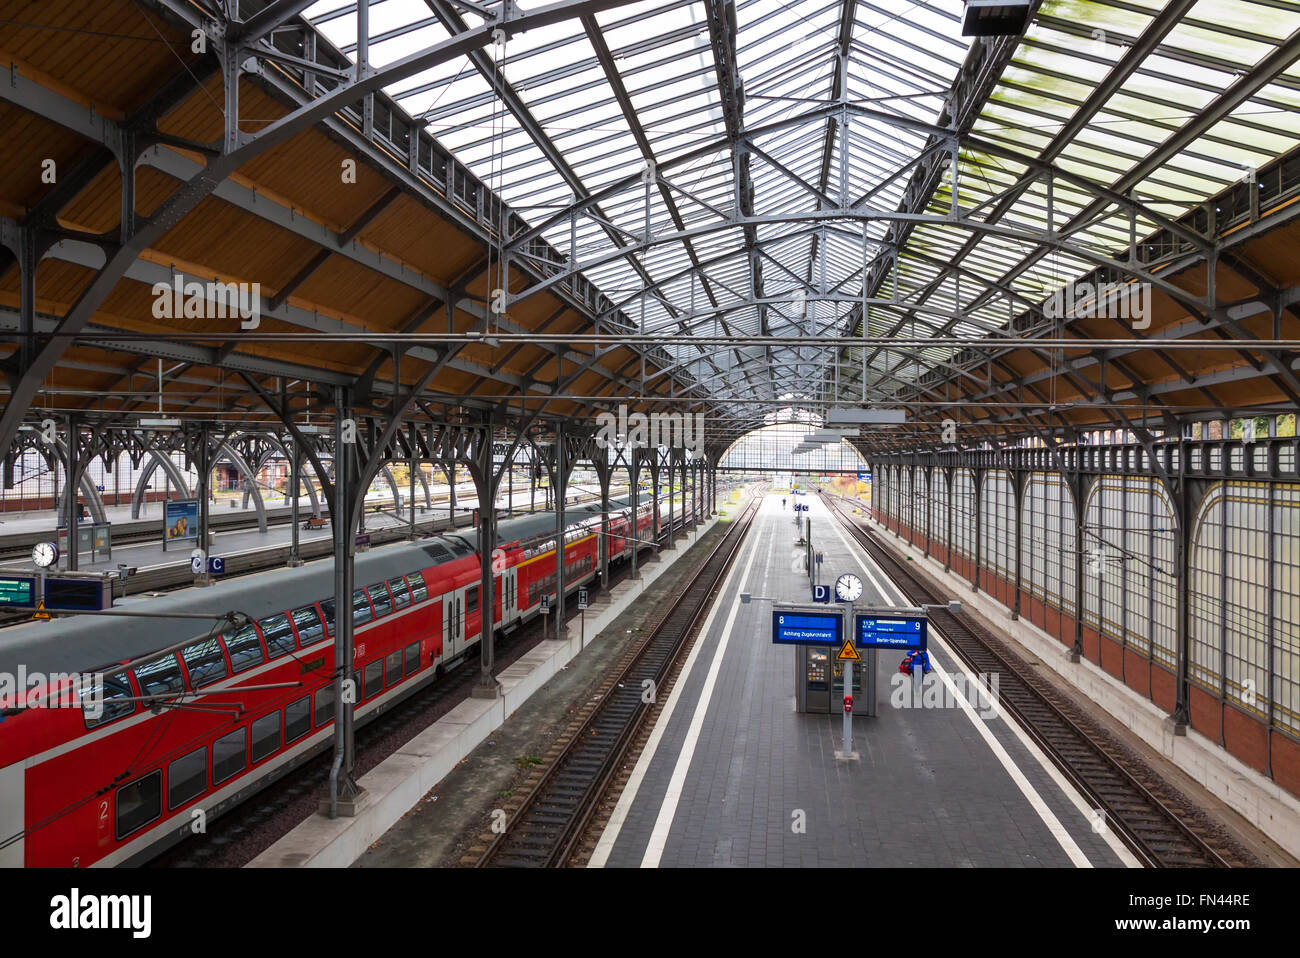 Lübeck Hbf gare. Est la principale gare ferroviaire de la ville hanséatique de Lübeck (Schleswig-Holstein), Allemagne Banque D'Images